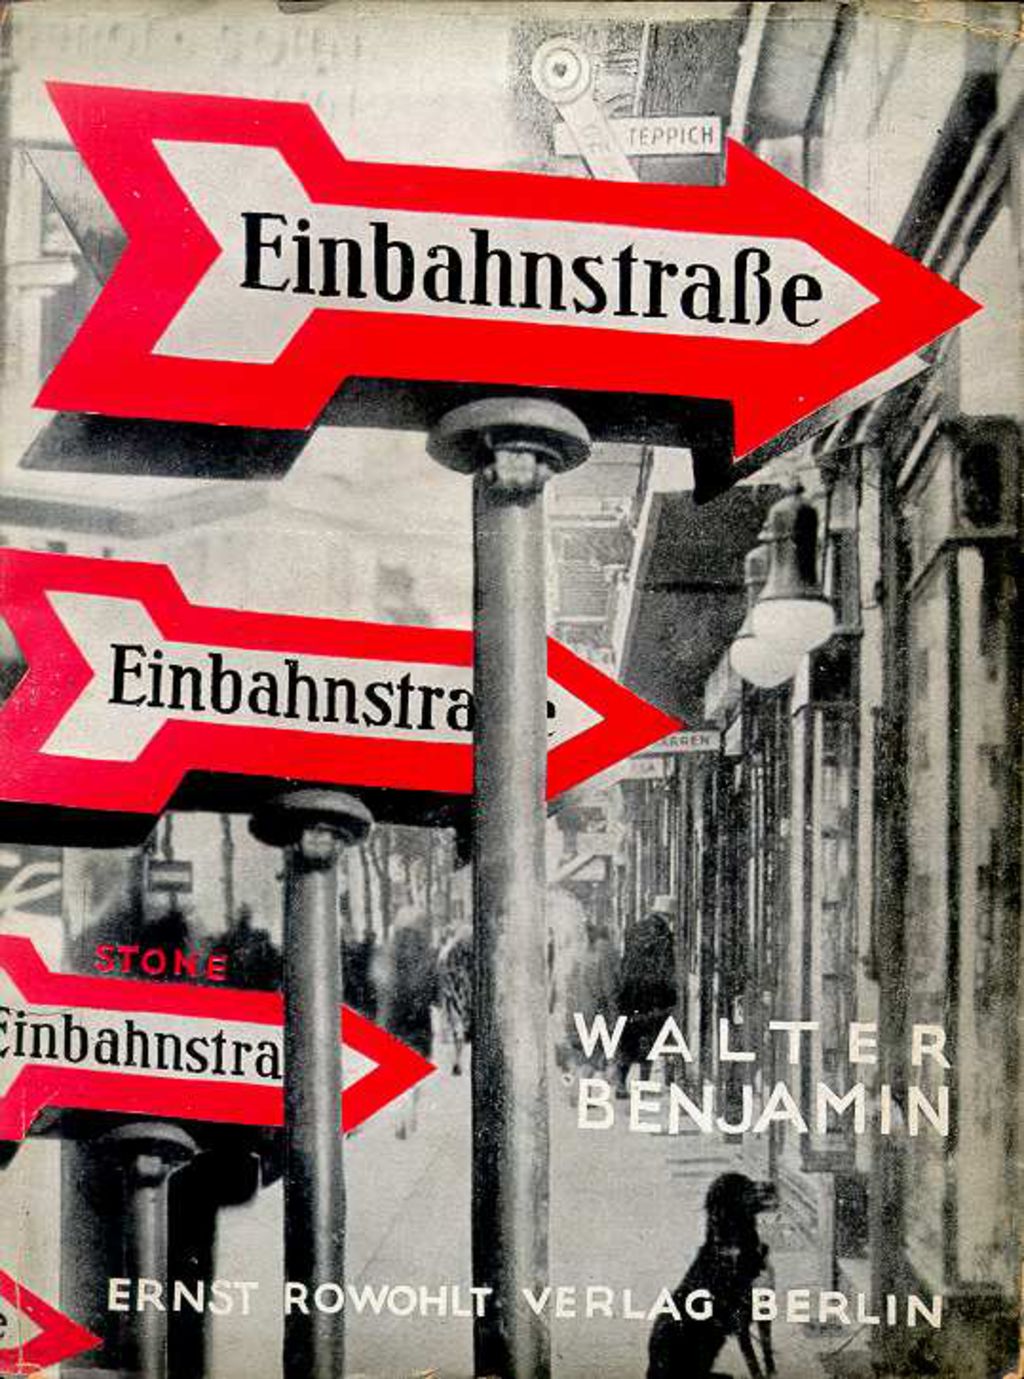 Buch: Benjamin, Walter "Einbahnstraße", 1928